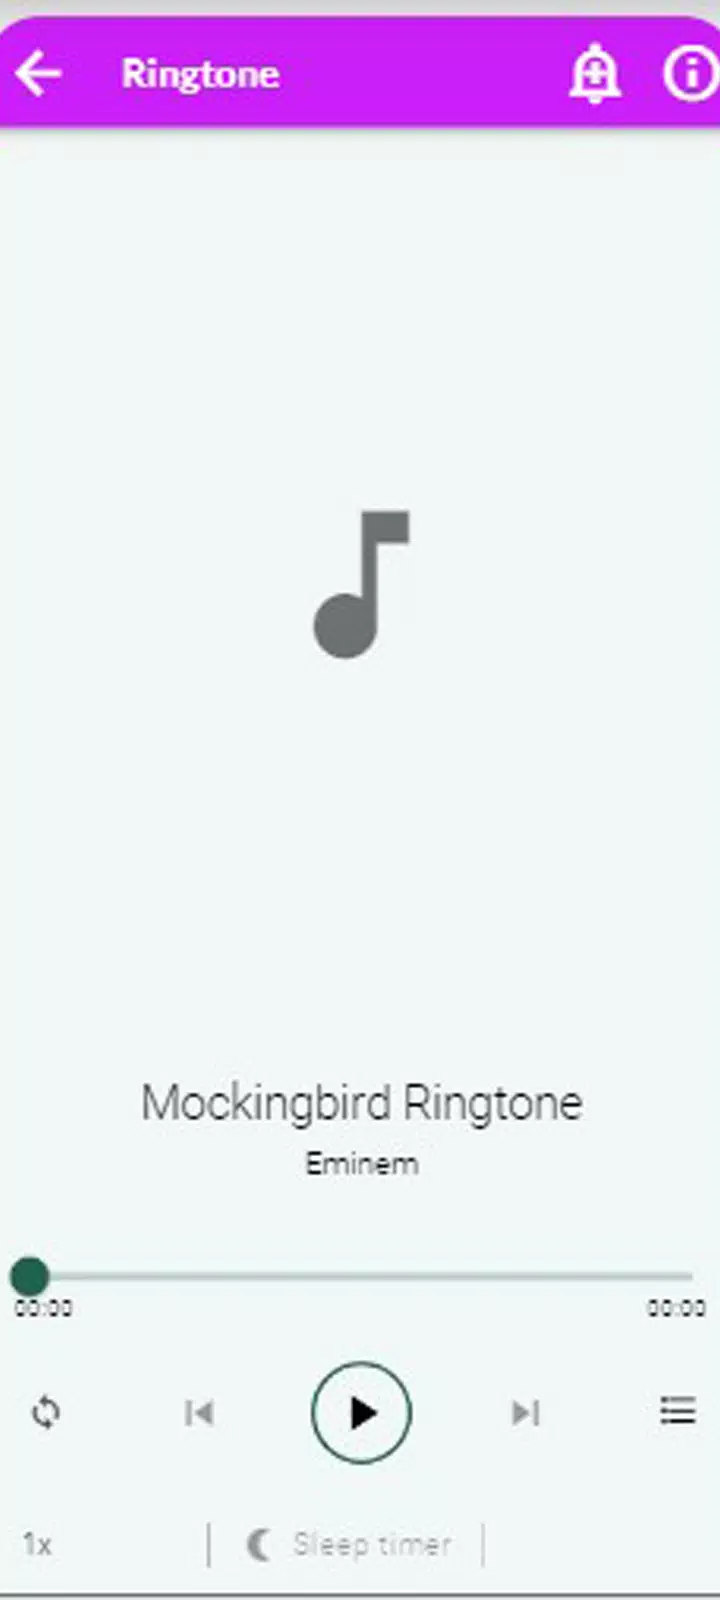 Eminem Mockingbird Ringtone APK for Android Download